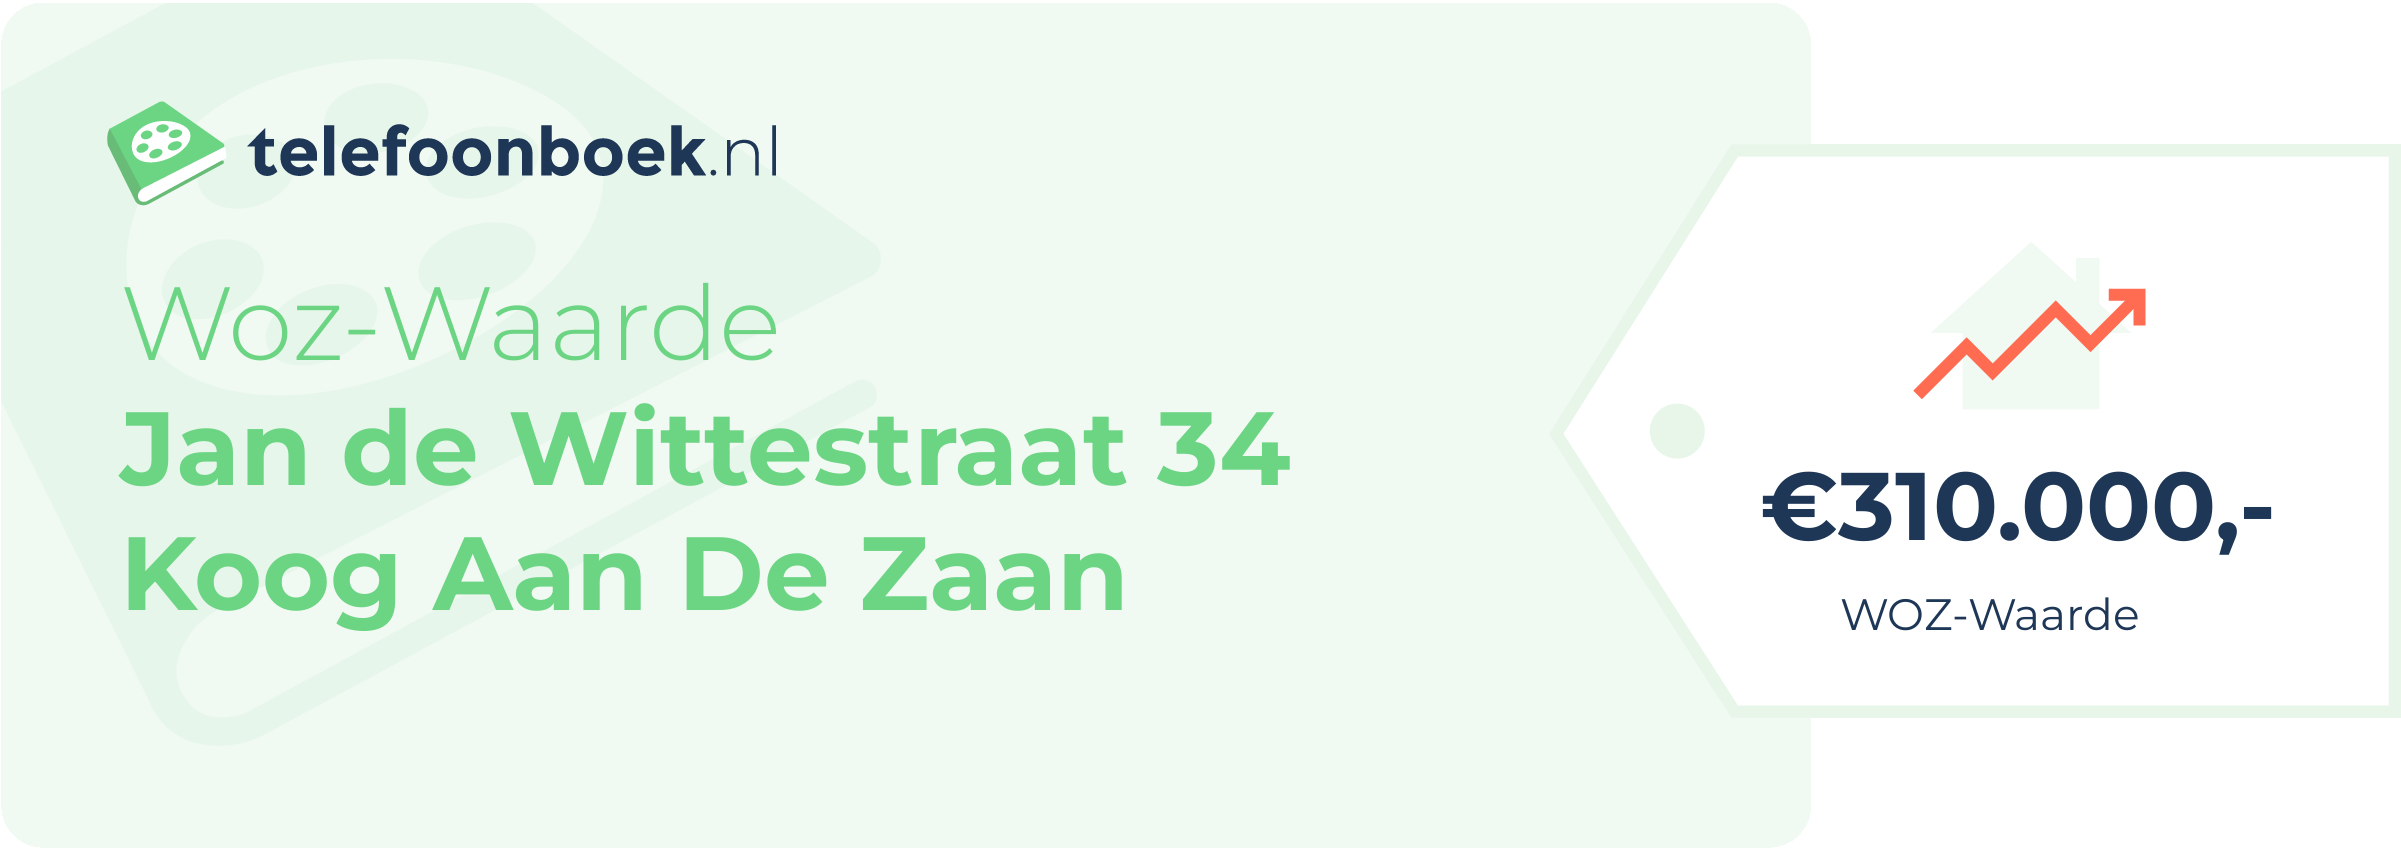 WOZ-waarde Jan De Wittestraat 34 Koog Aan De Zaan